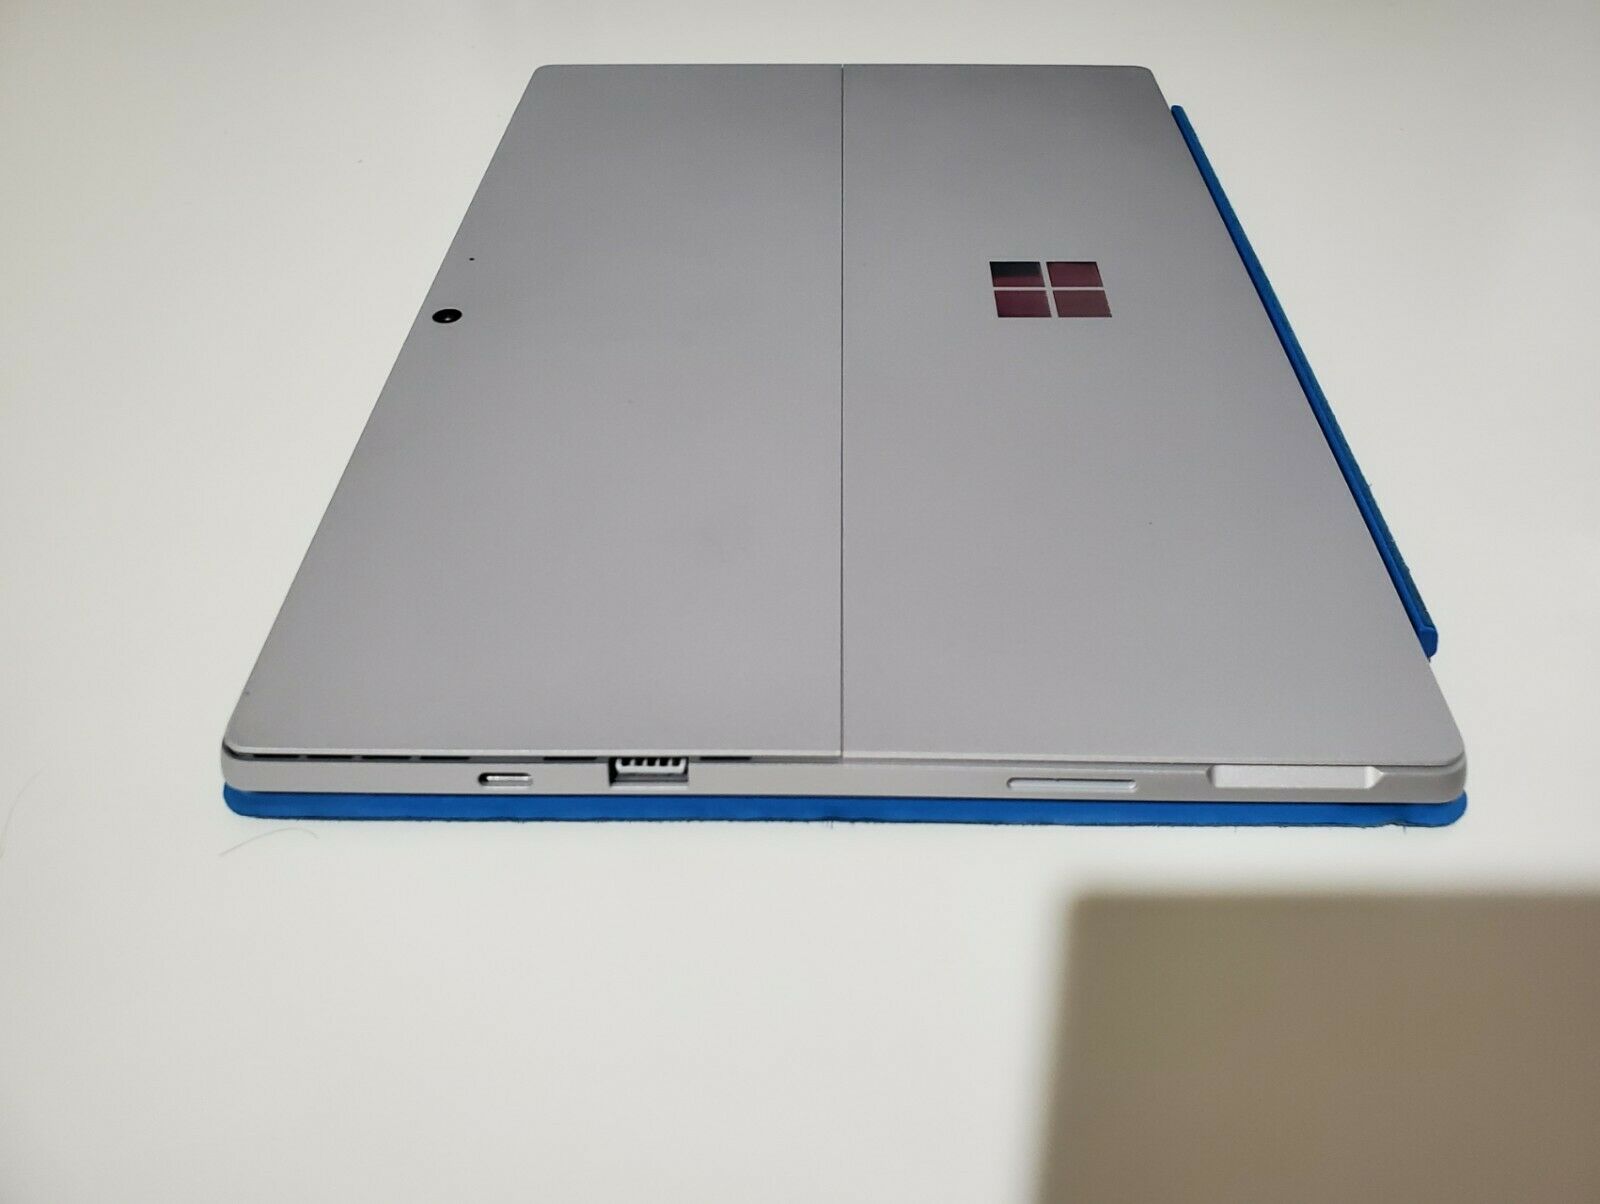 Microsoft - Surface Pro 7 - ブラック PUV-00027 値下げ中の+